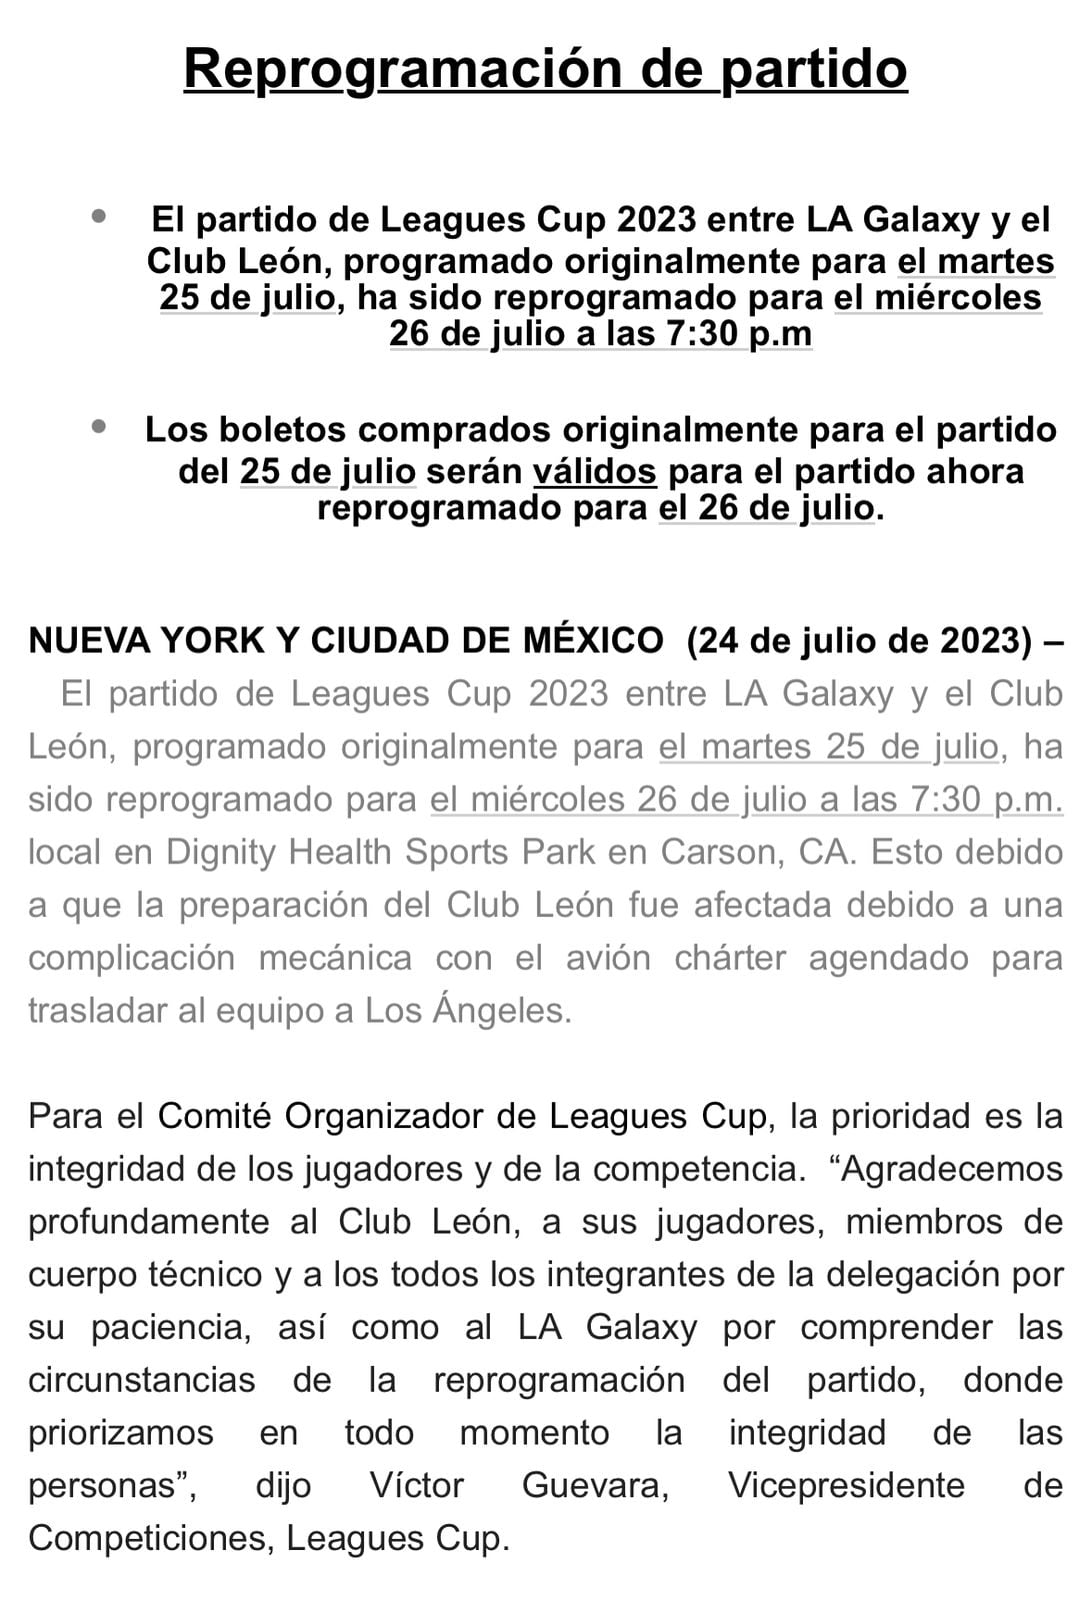 Comunicado de la reprogramación del partido del Club León en la Leagues Cup.